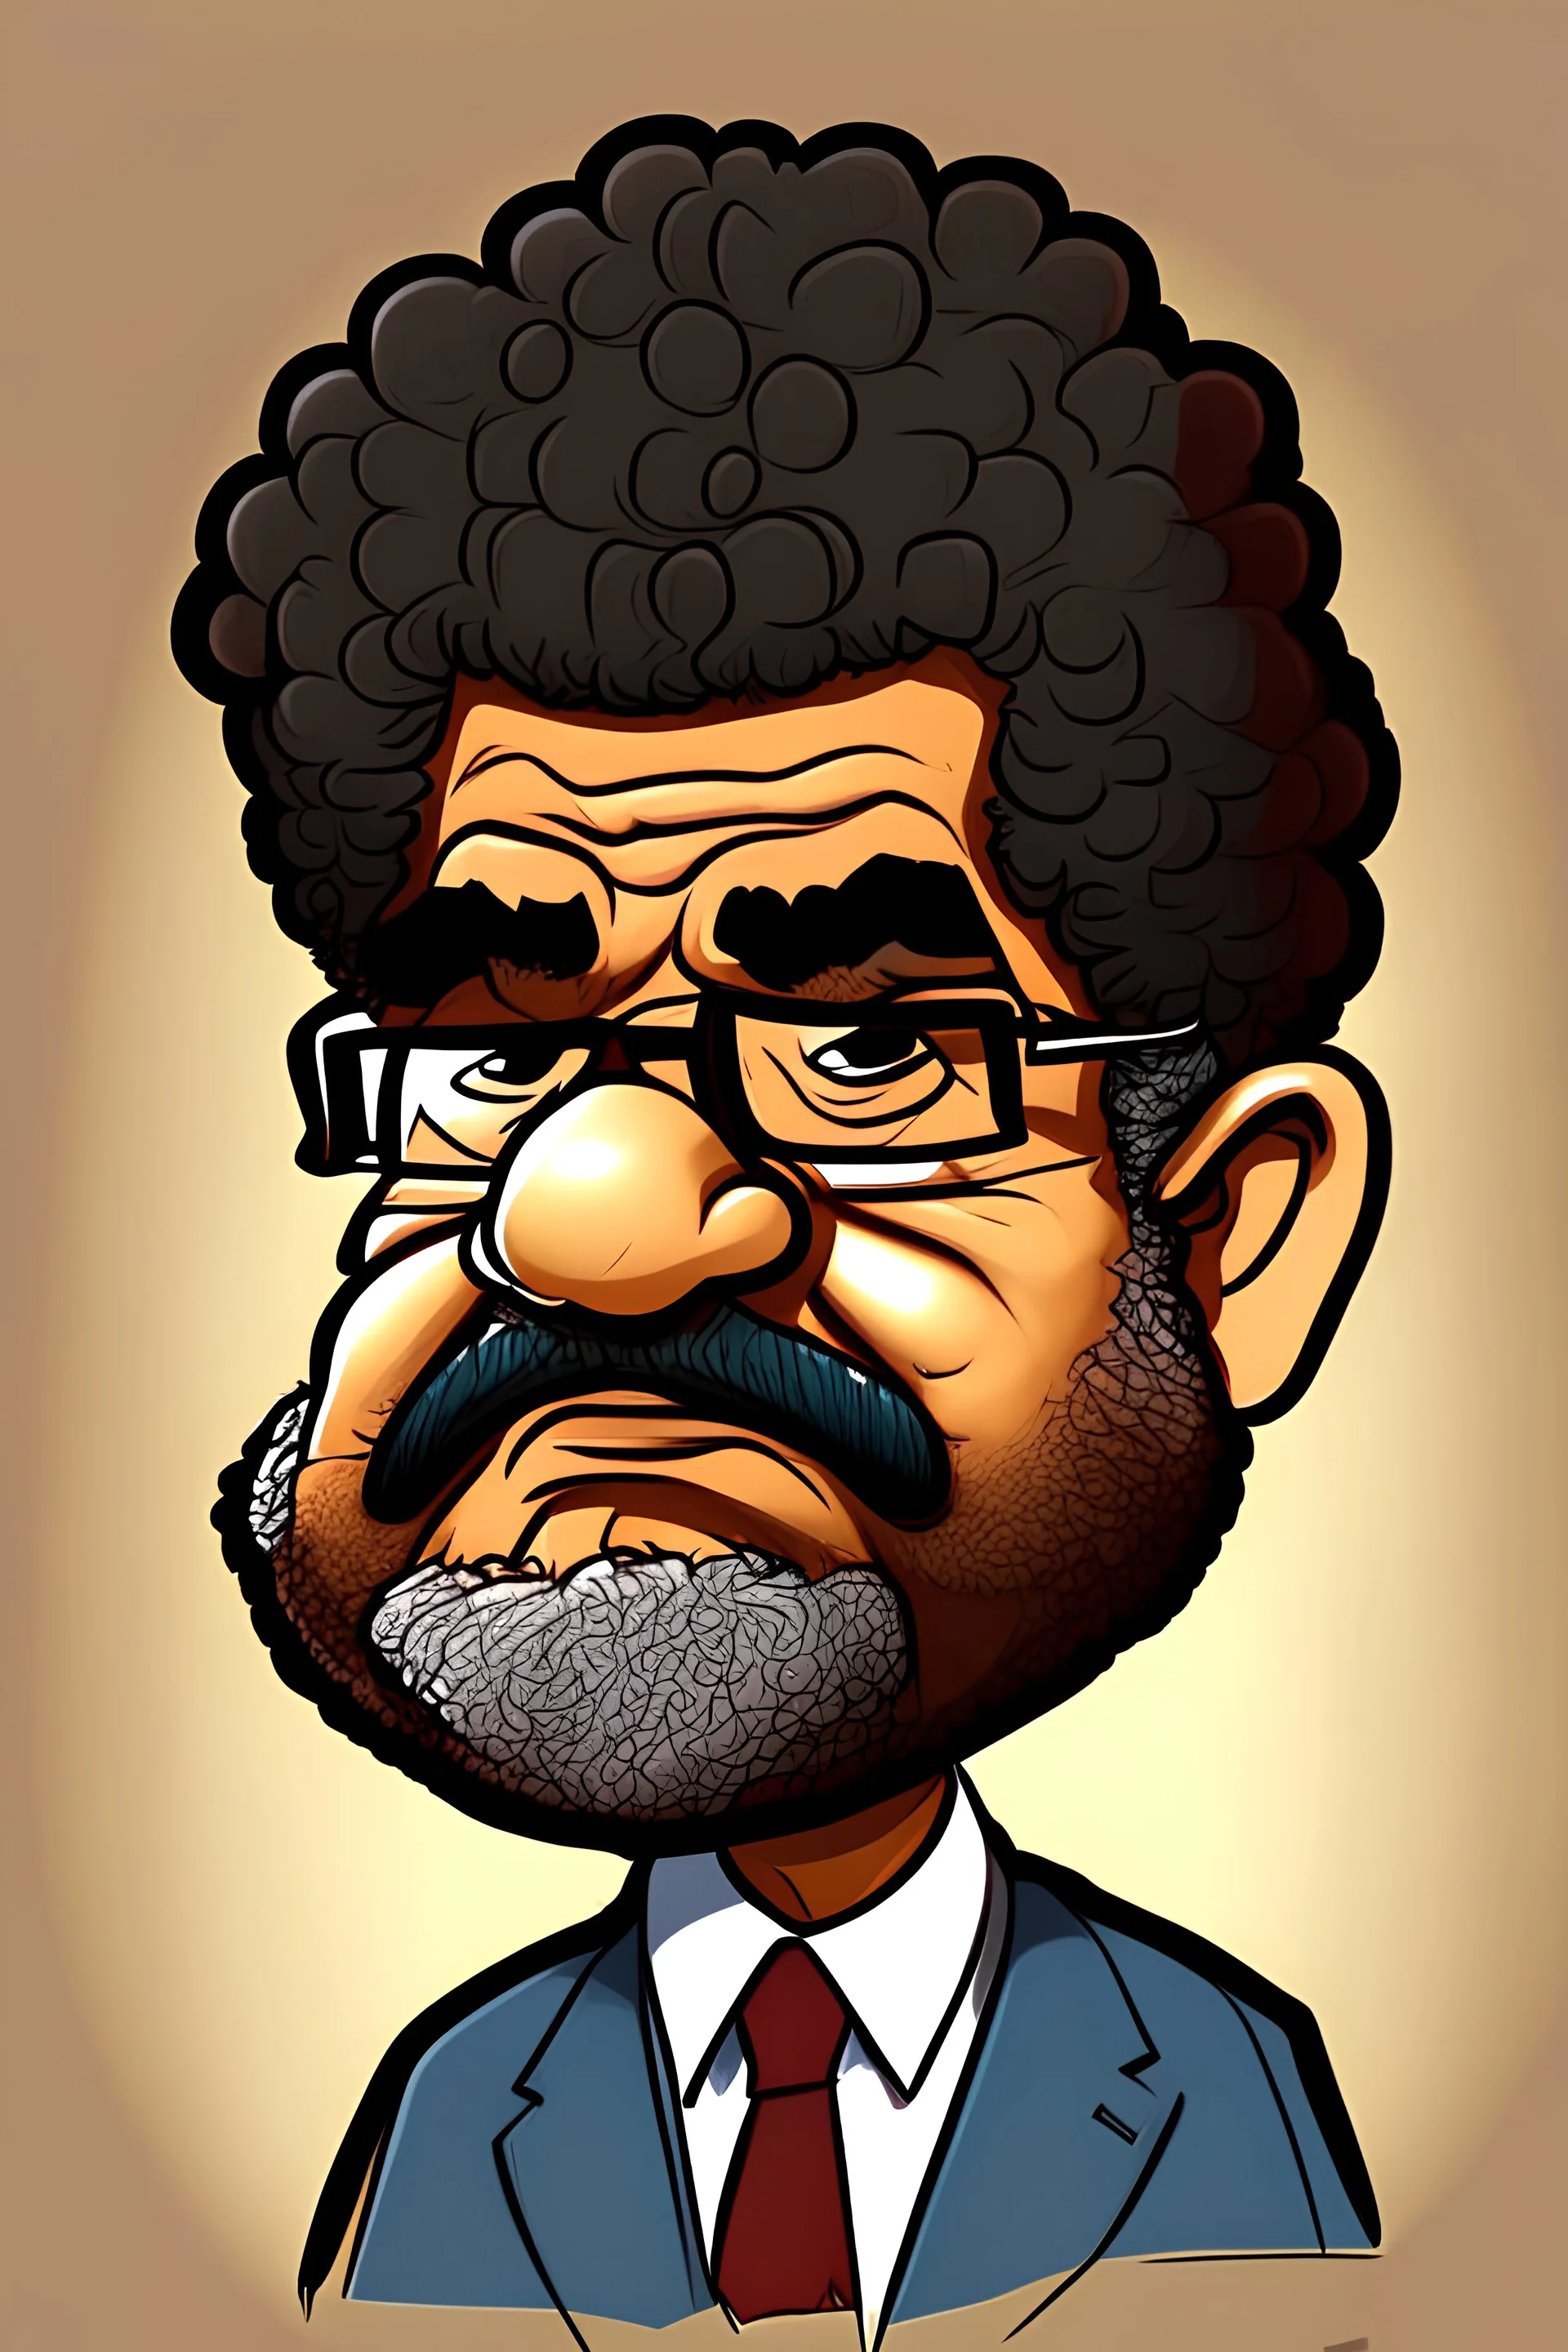 Mohamed Morsy Former President of Egypt cartoon 2d